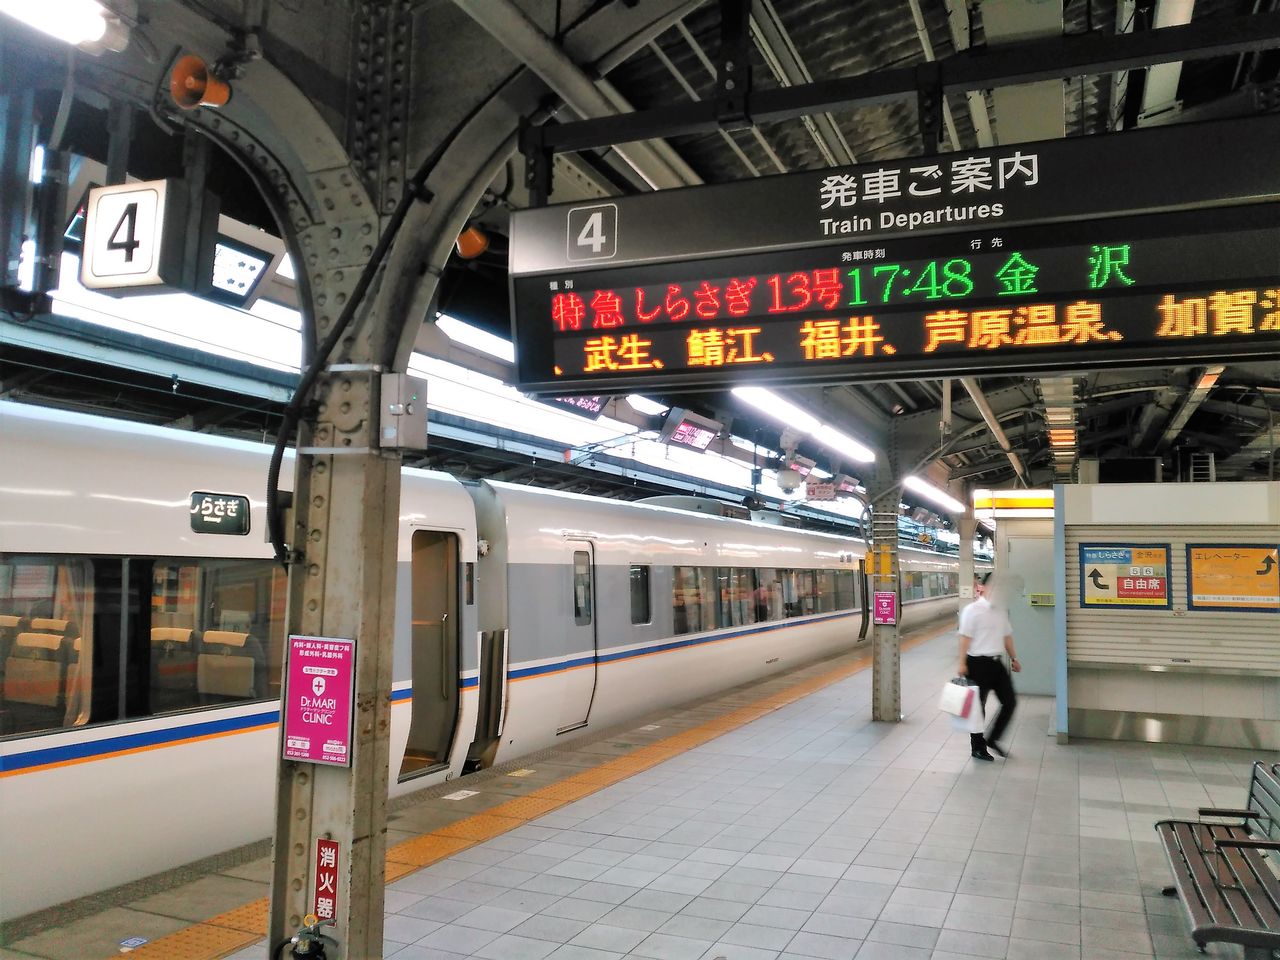 乗り換え しらさぎ 新幹線と在来線特急｢乗継割引｣､驚きの活用法